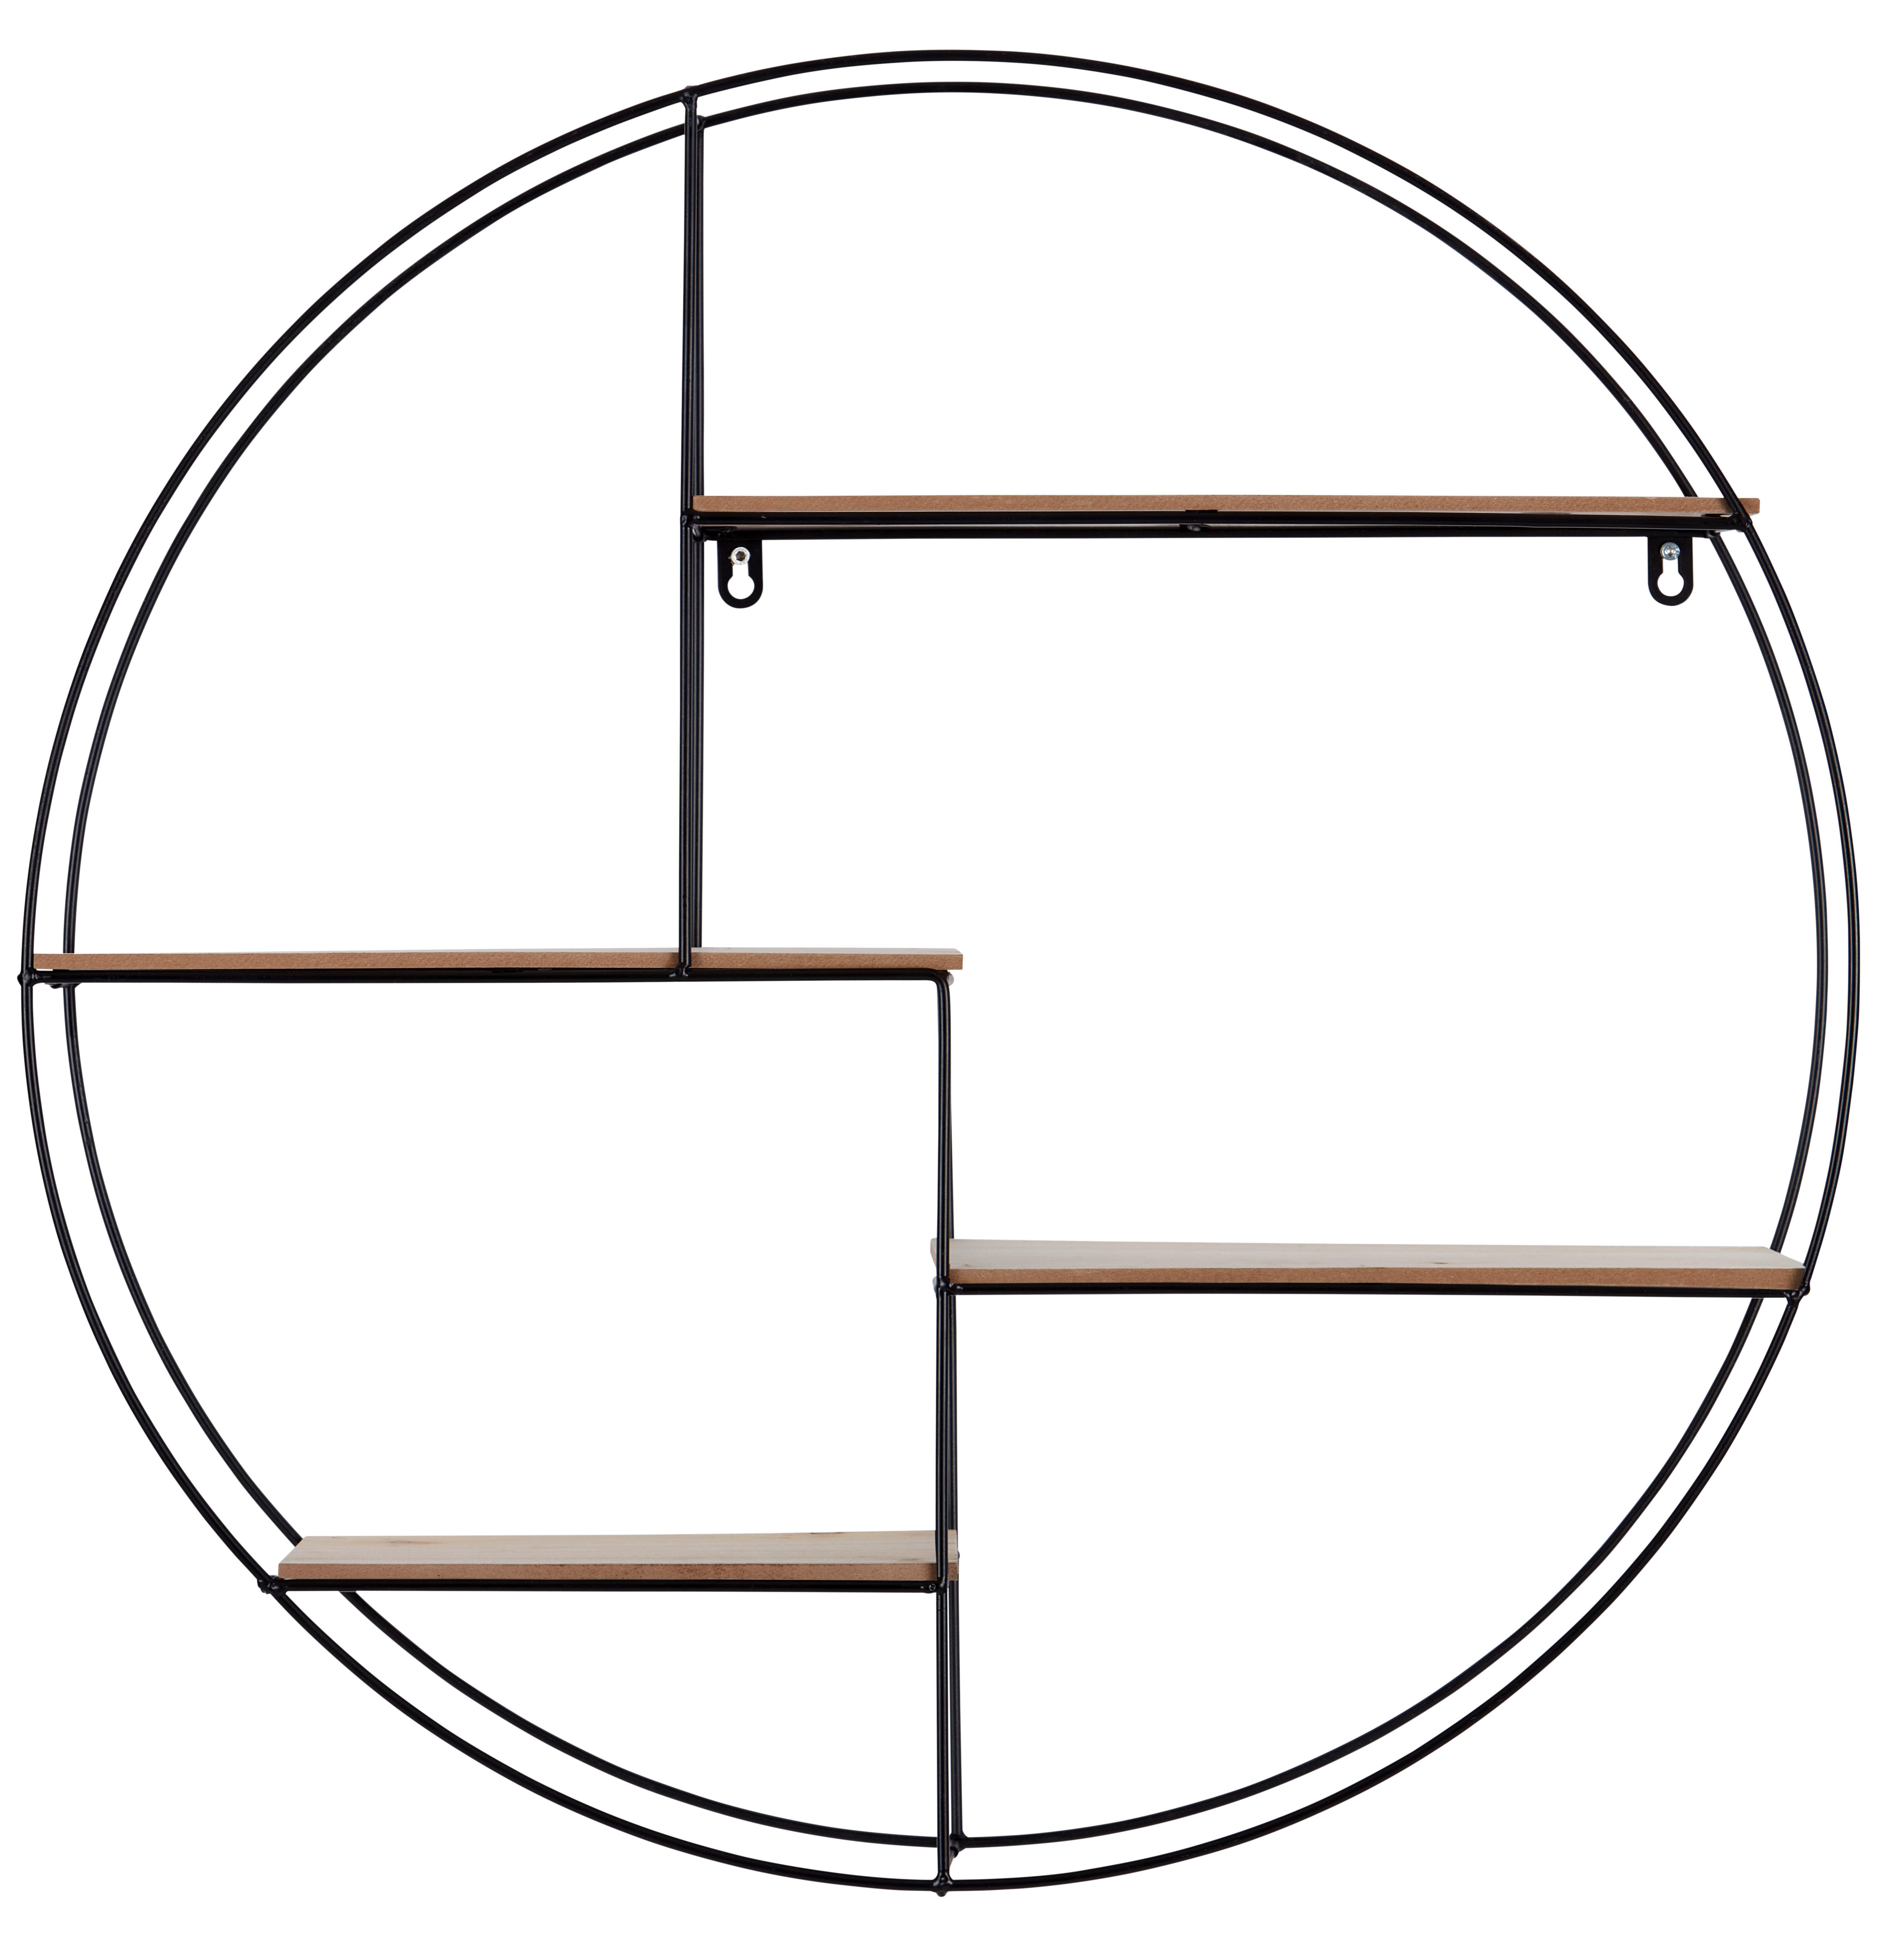 Polica Zidna Rom 1 - boje pinije/crna, Modern, drvni materijal/metal (70/70/15cm) - Modern Living